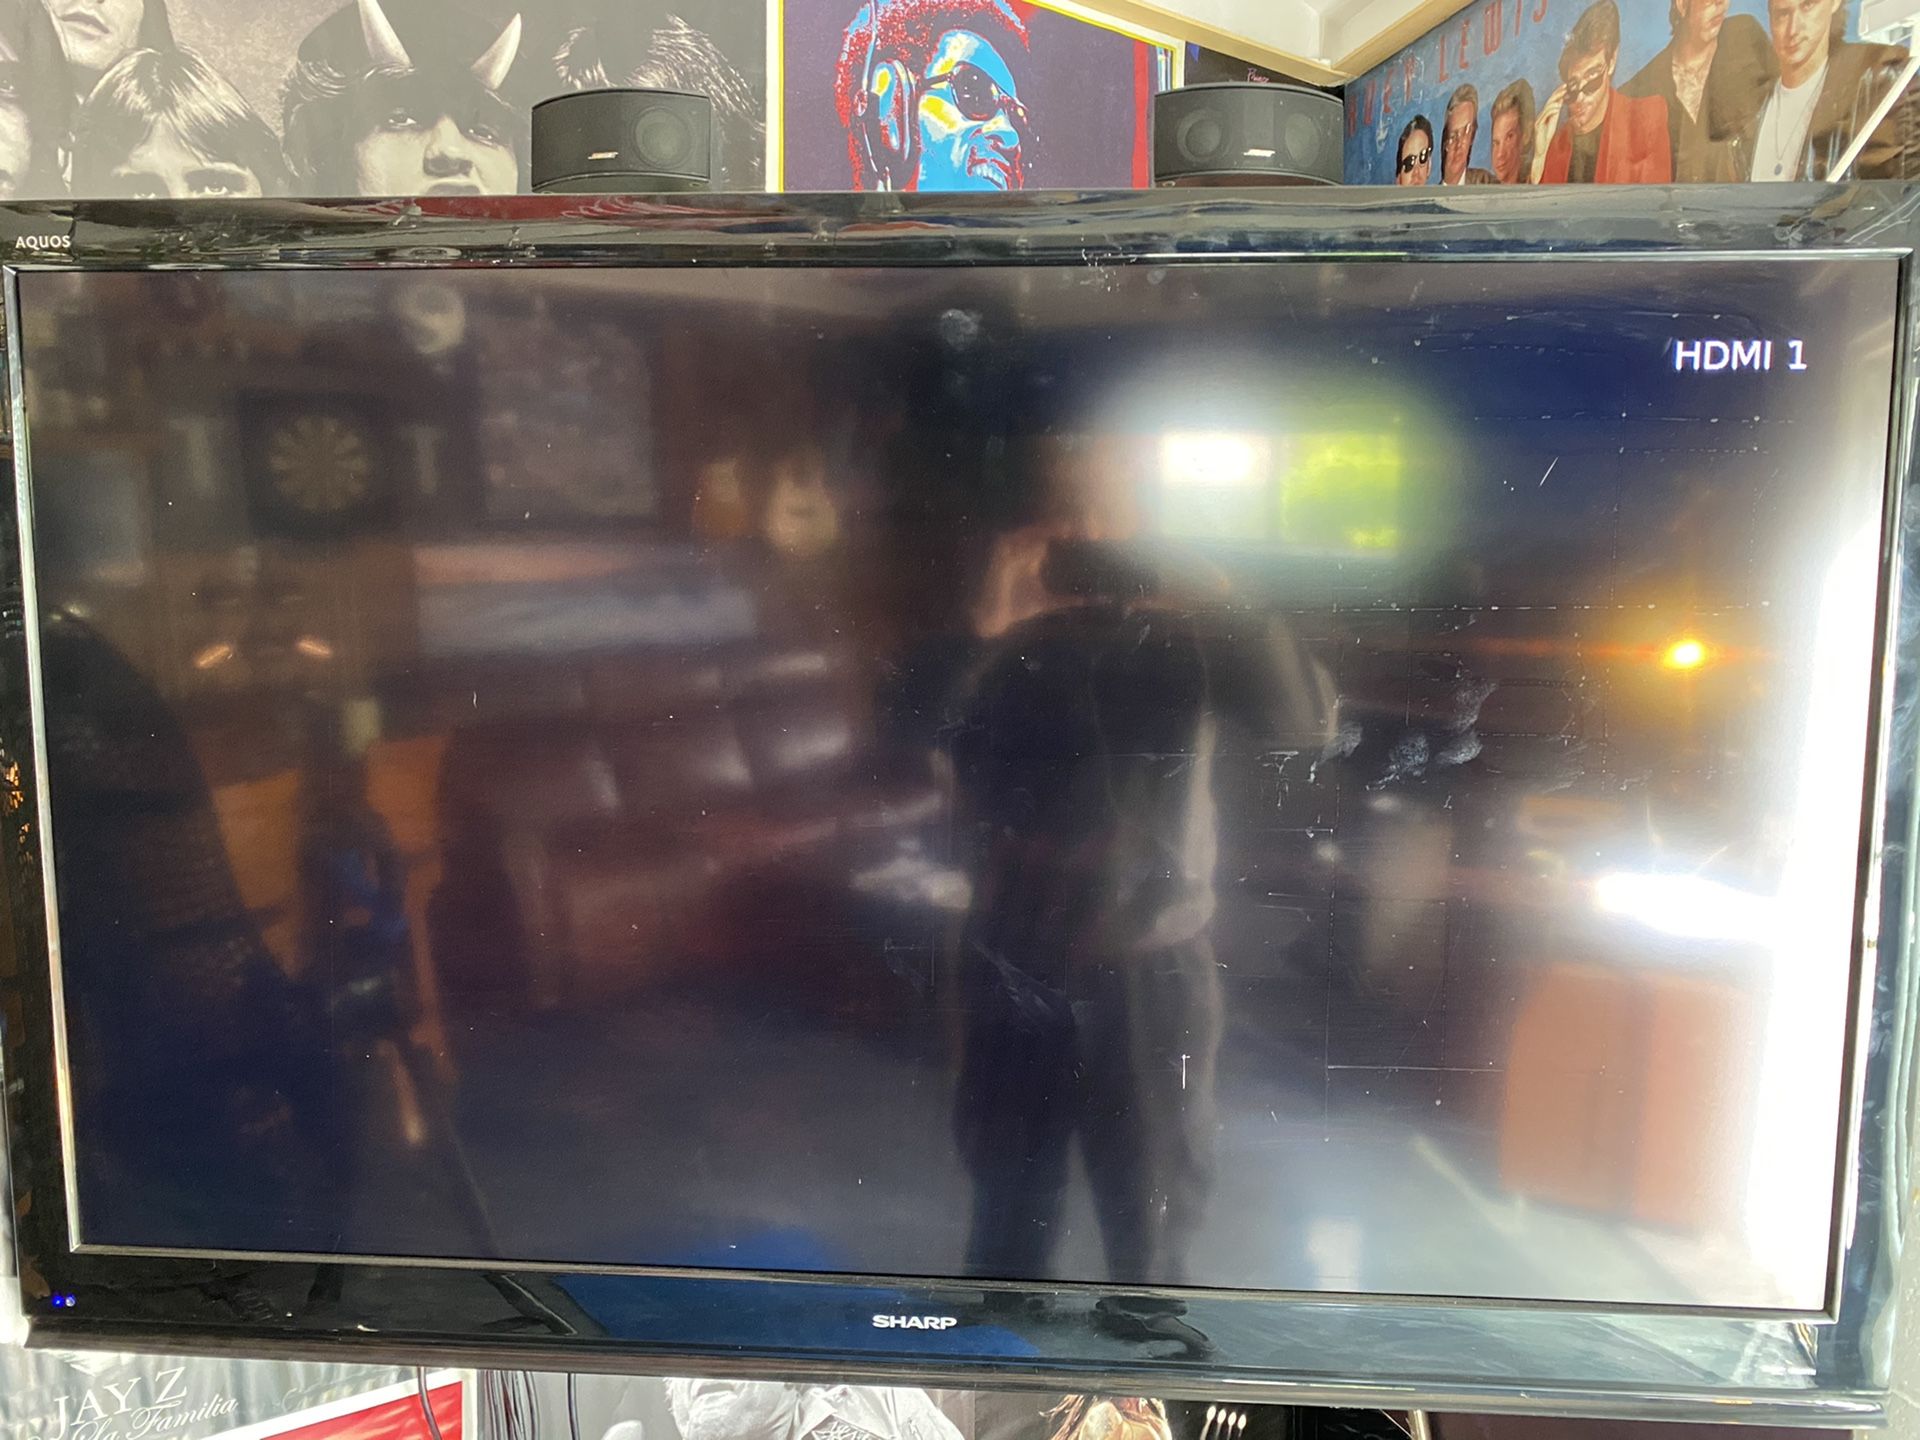 Sharp 60 inch flatscreen LCD TV